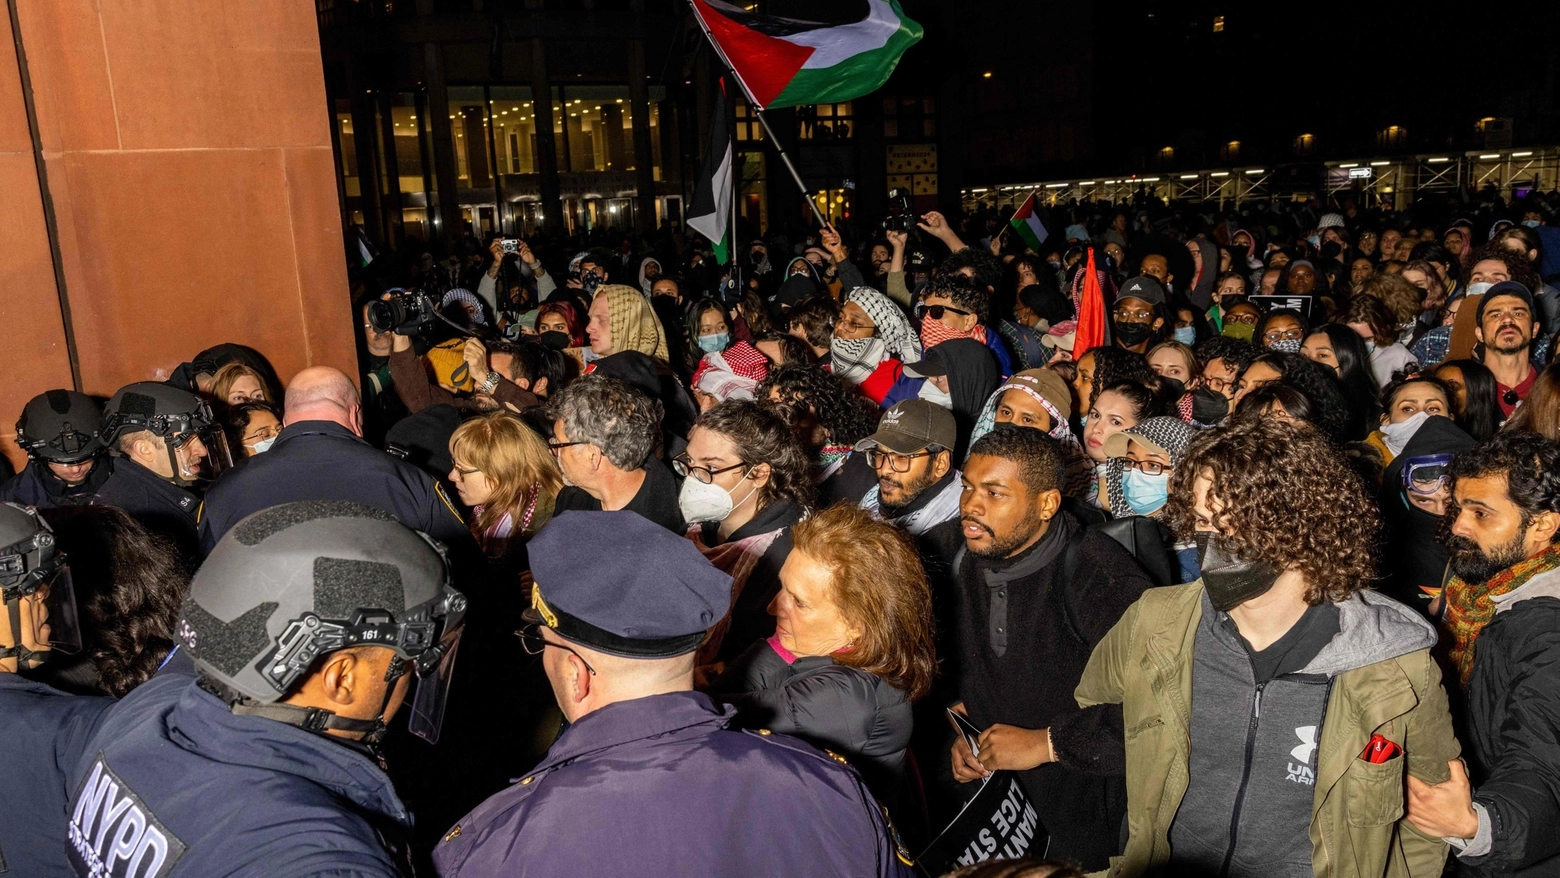 Manifestazioni studentesche da Yale a Berkley, caos e scontri. Alla Columbia lezioni online. “Condanno le iniziative antisemite – ha detto Biden – ma anche chi non capisce quello che sta accade ai palestinesi”